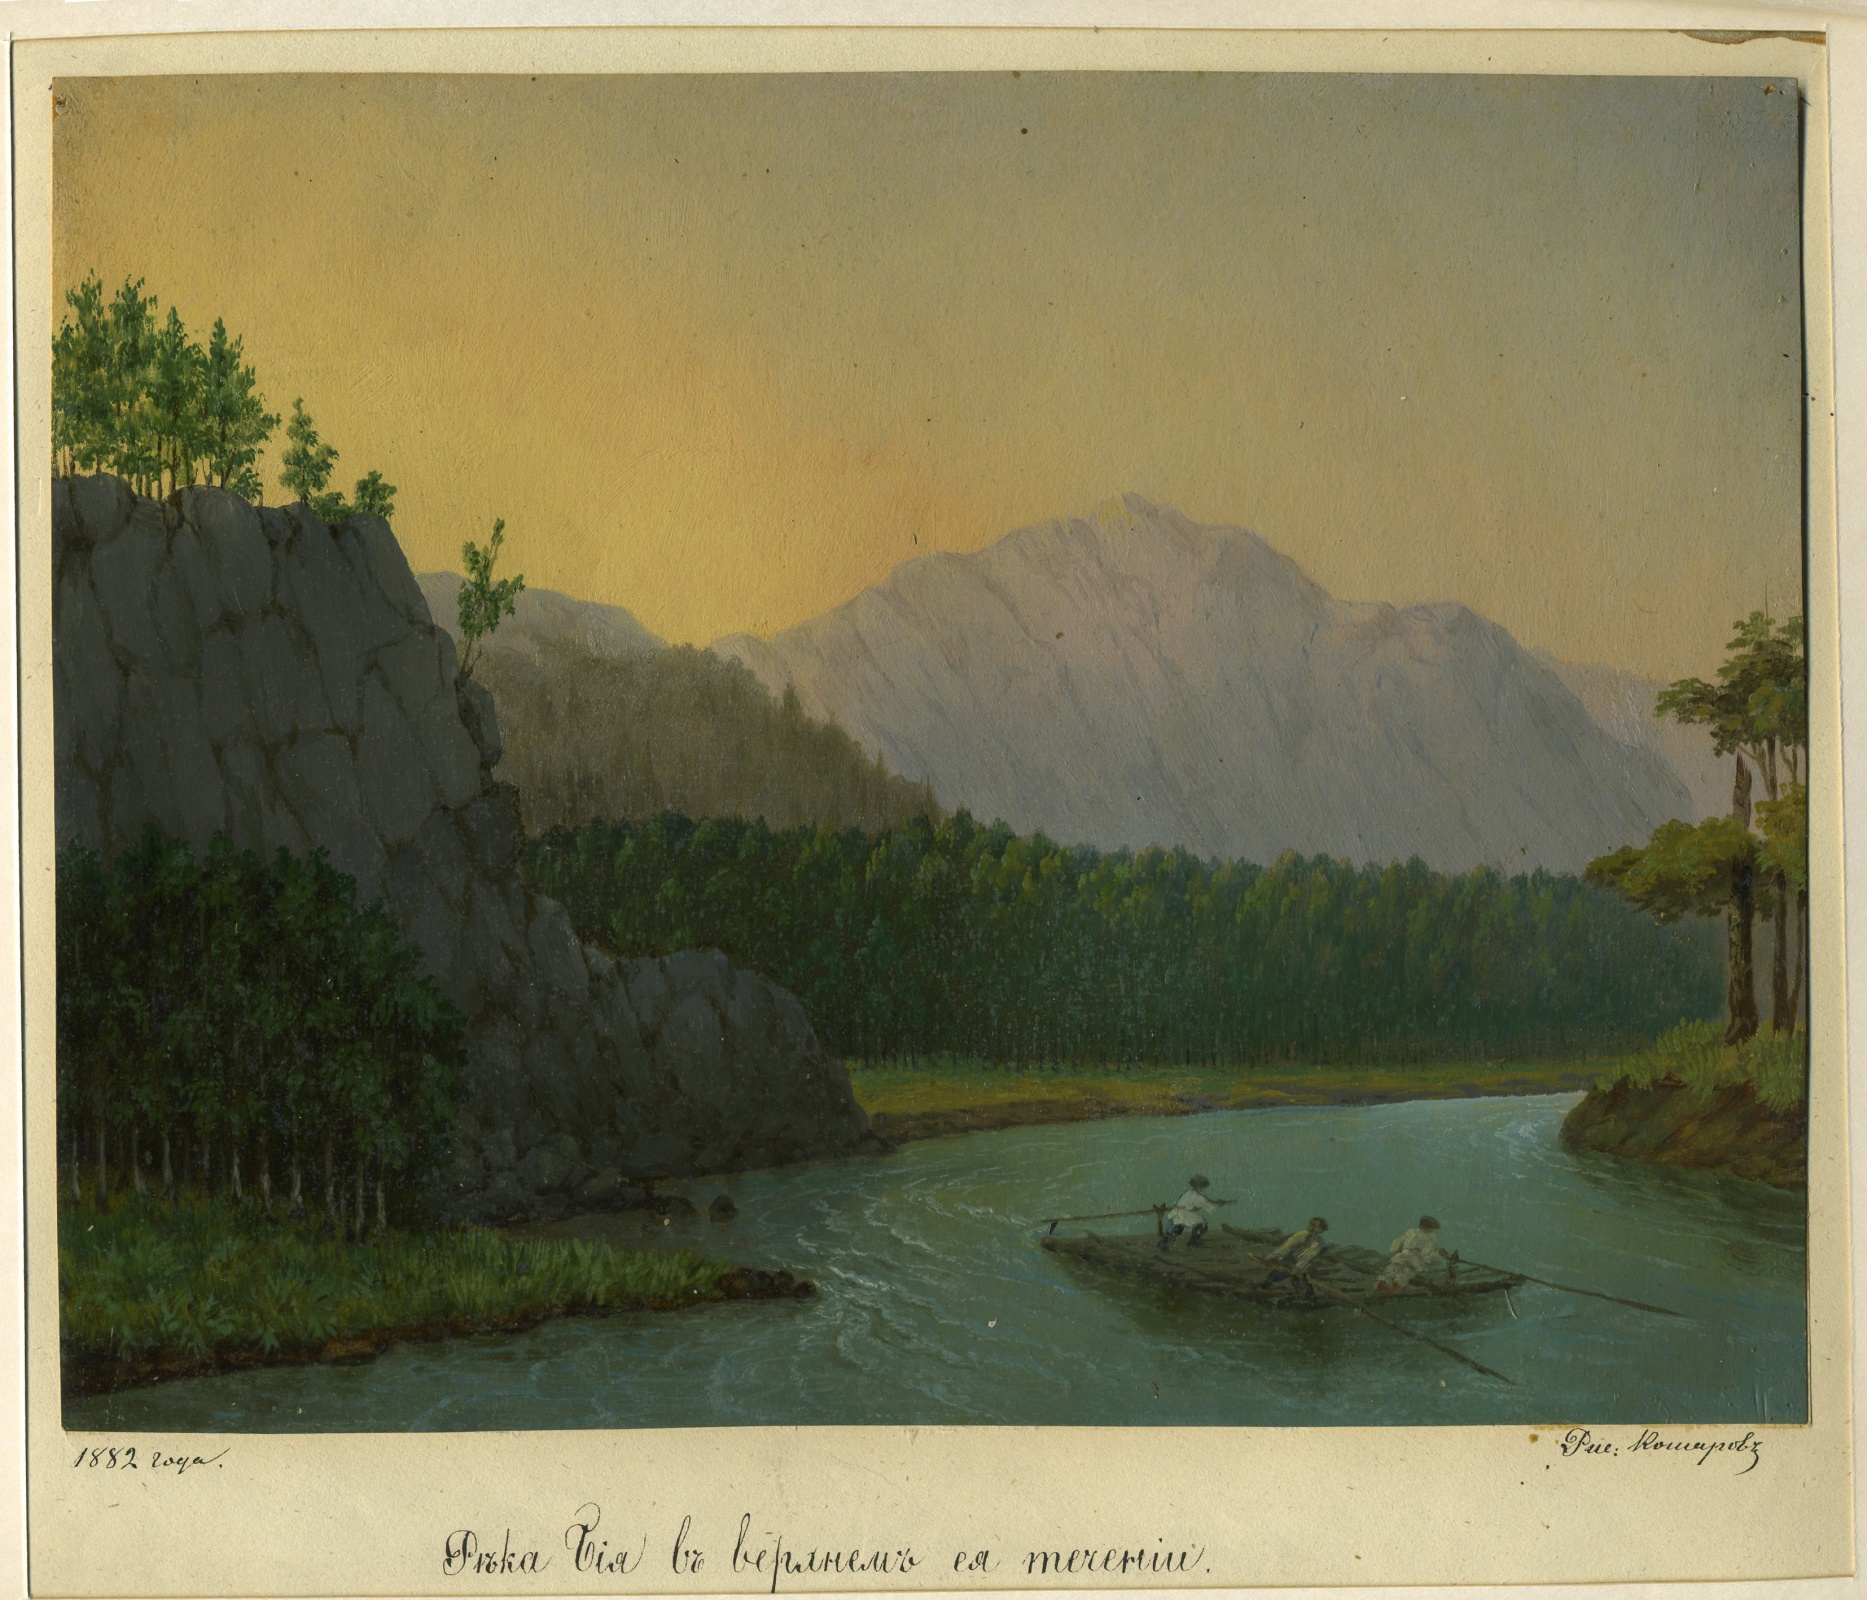 Река Бия в верхнем ее течении. Рисунок П.М. Кошарова из Научного архива РГО